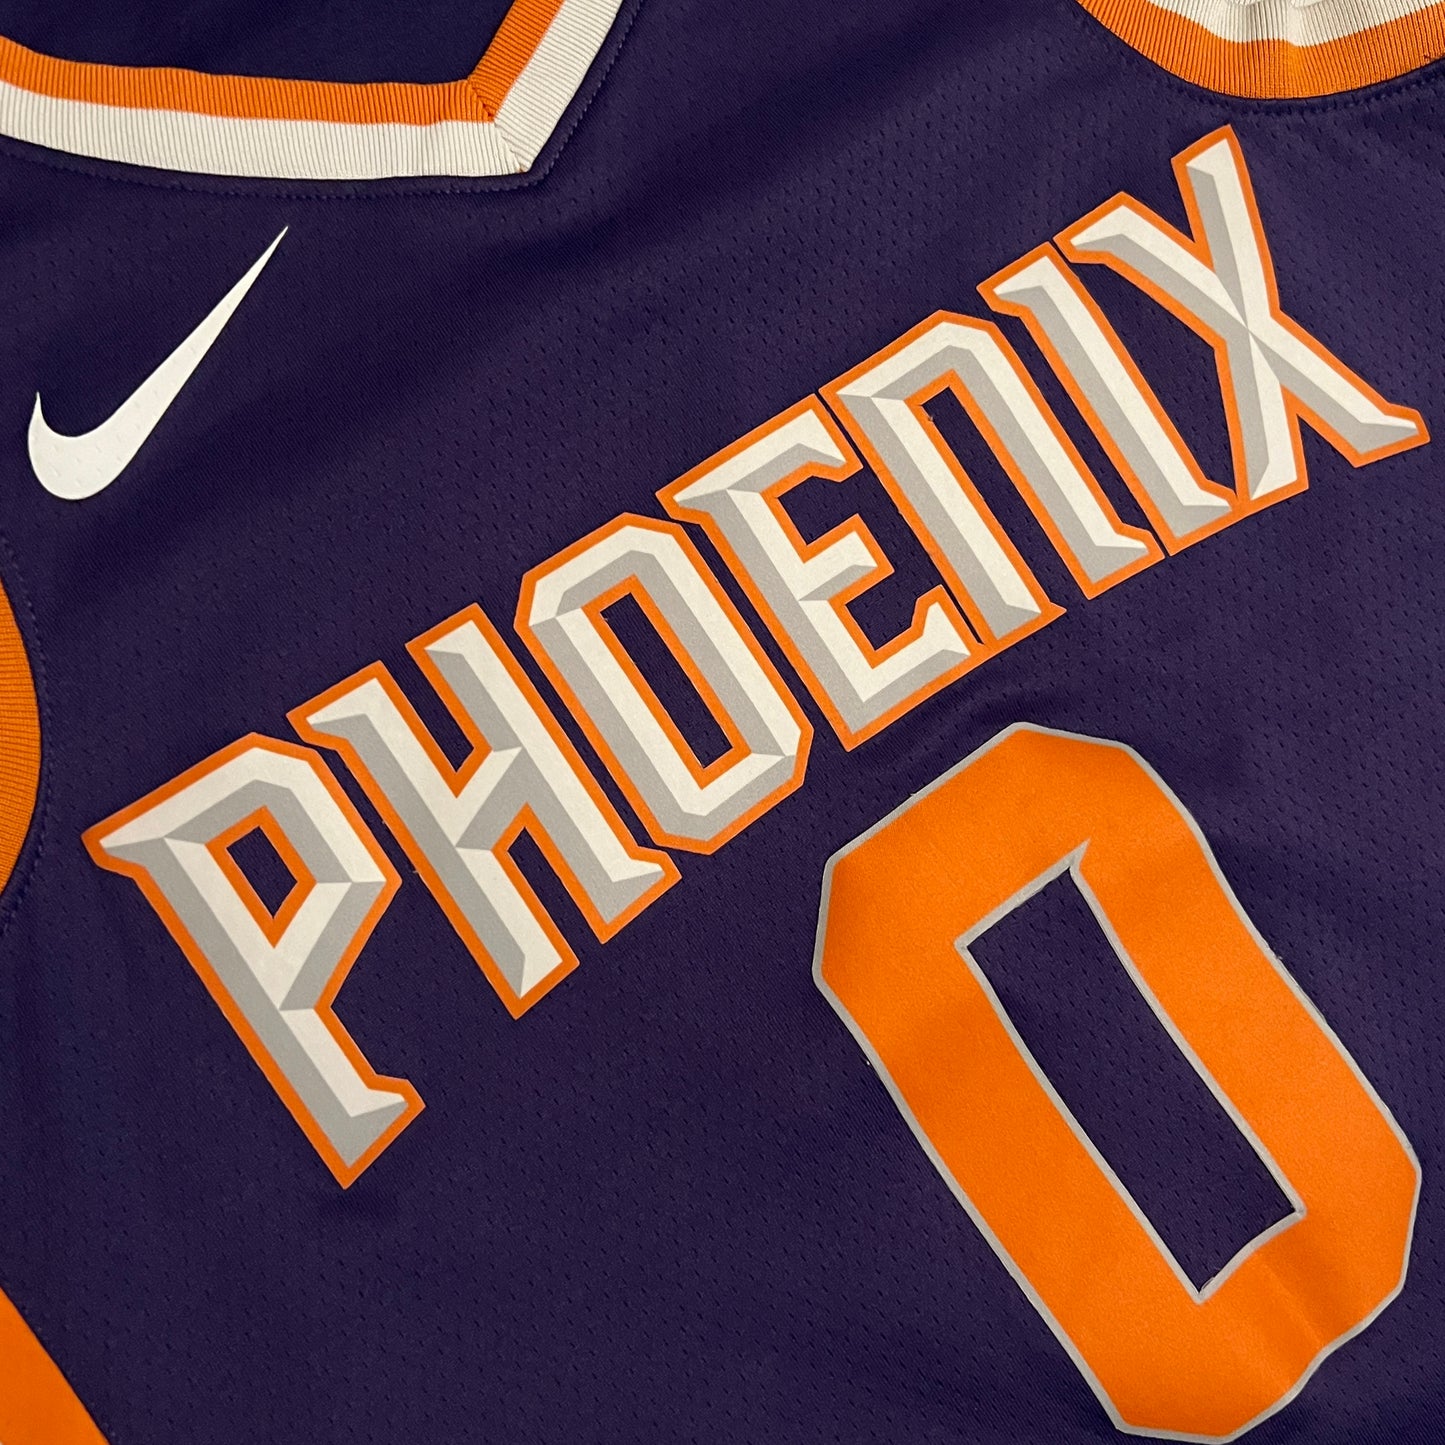 Marquese Chriss Phoenix Suns Nike Jersey - M